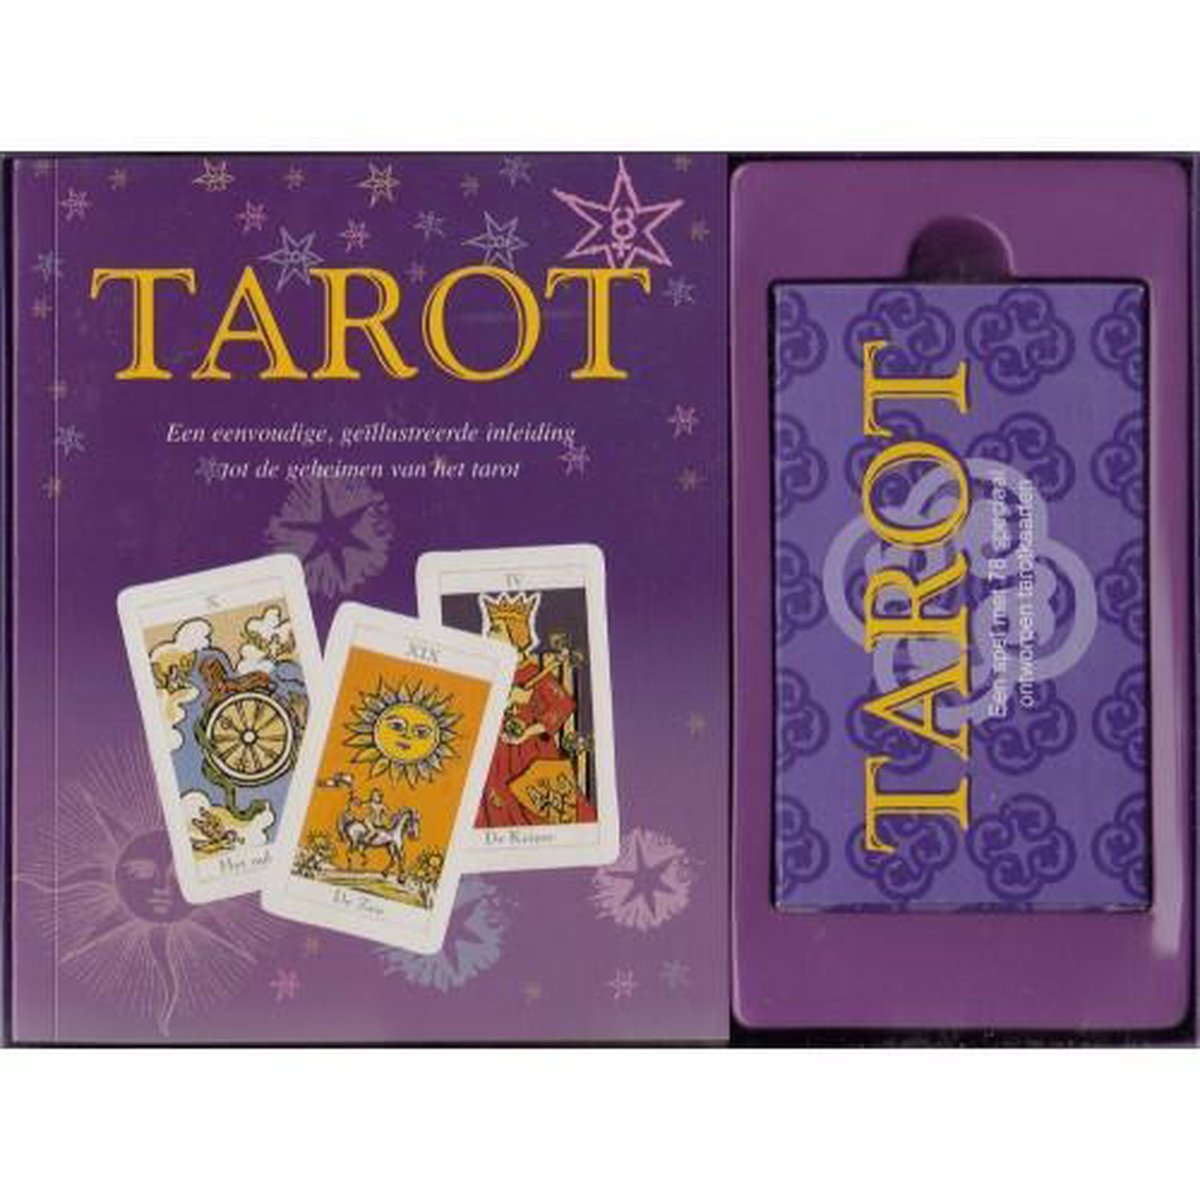 Boek & spel tarot